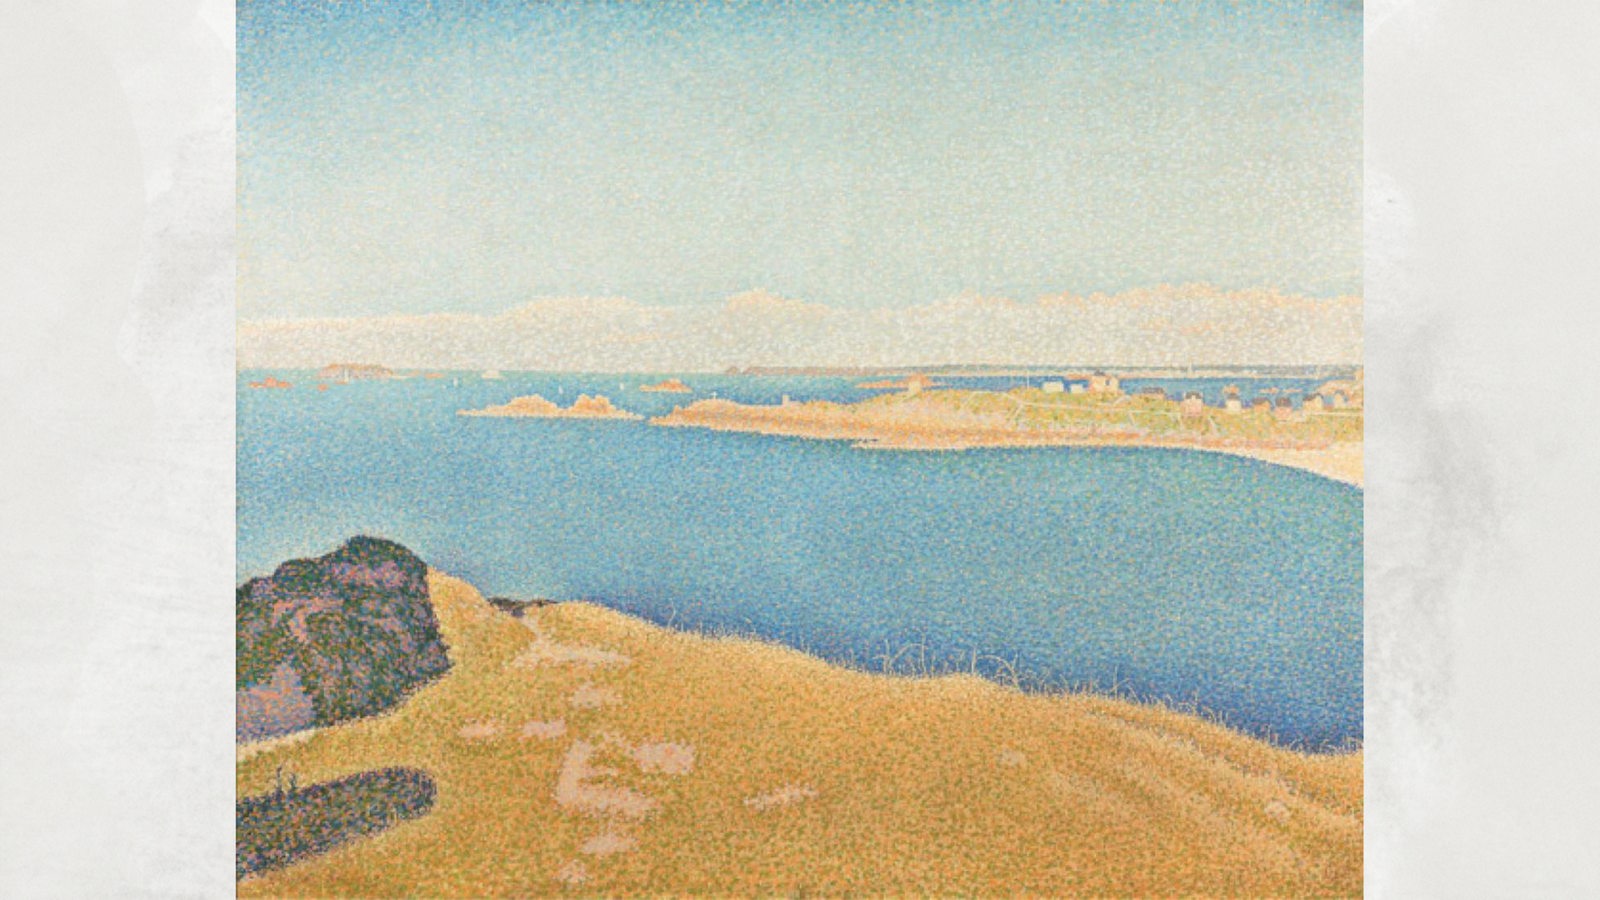 Gemälde: Paul Signac, Saint-Briac. La Garde-Guérin. Opus 211, 1890, Öl auf Leinwand